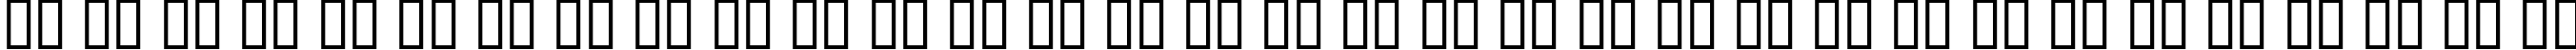 Пример написания русского алфавита шрифтом Atomic